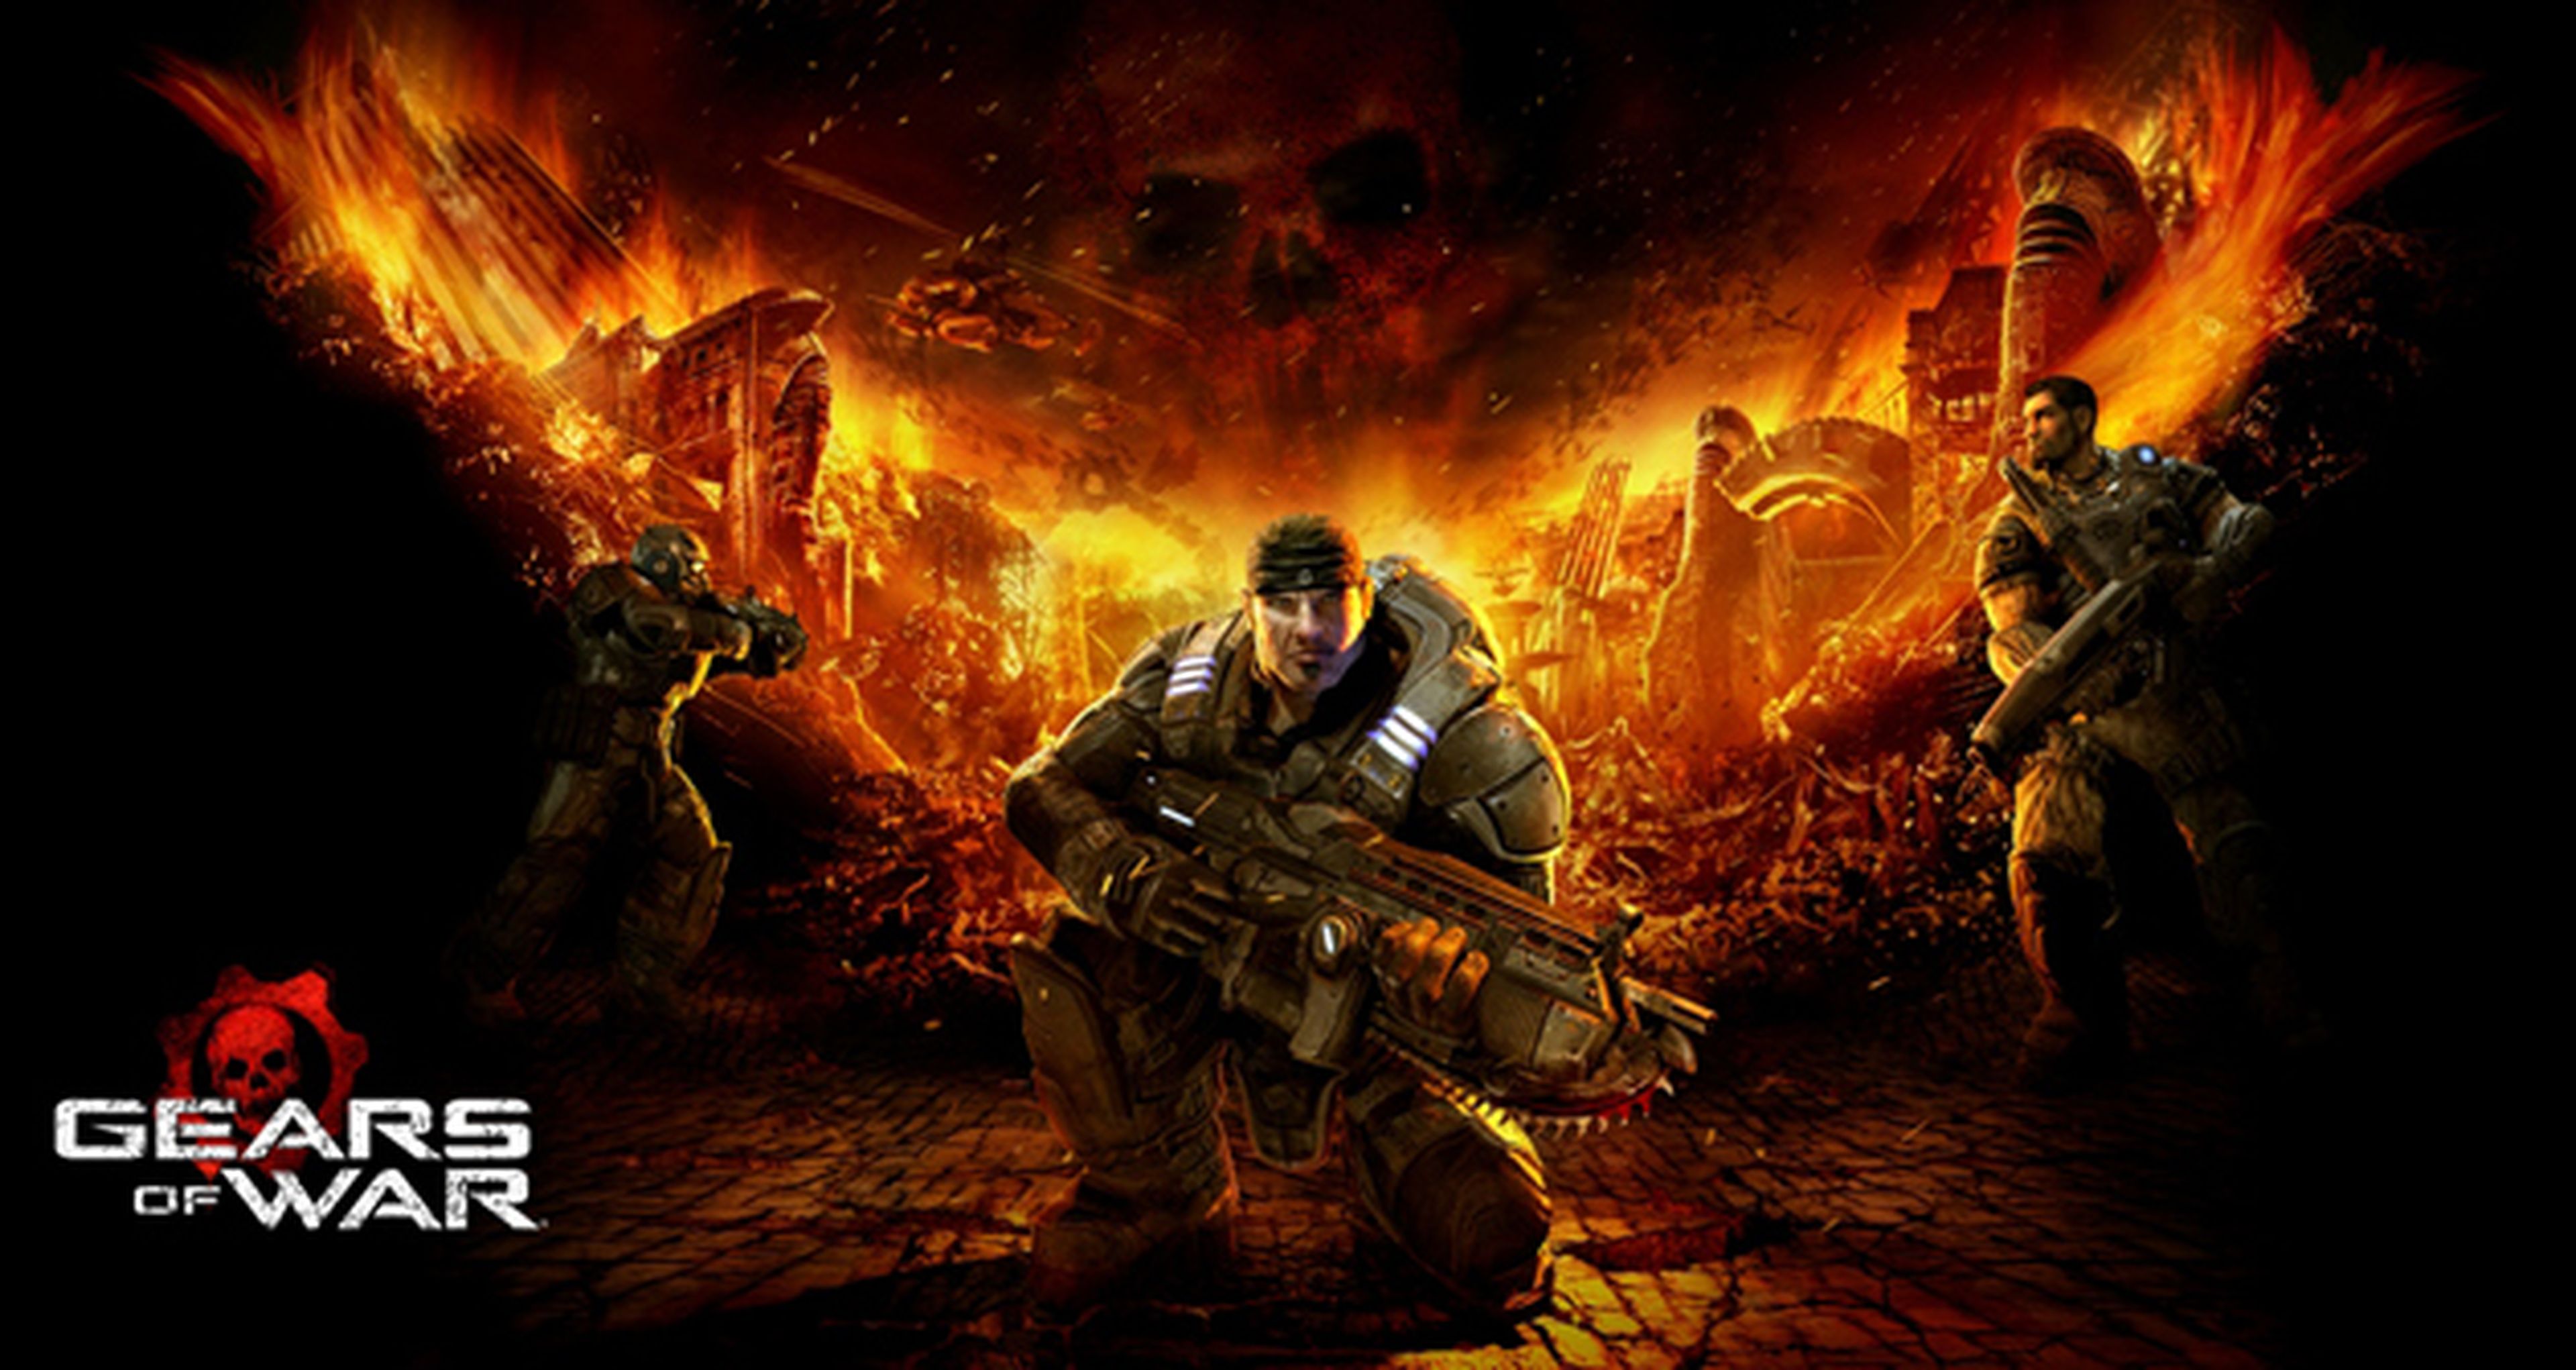 Gears of Wars gratis en Xbox Live Gold en diciembre